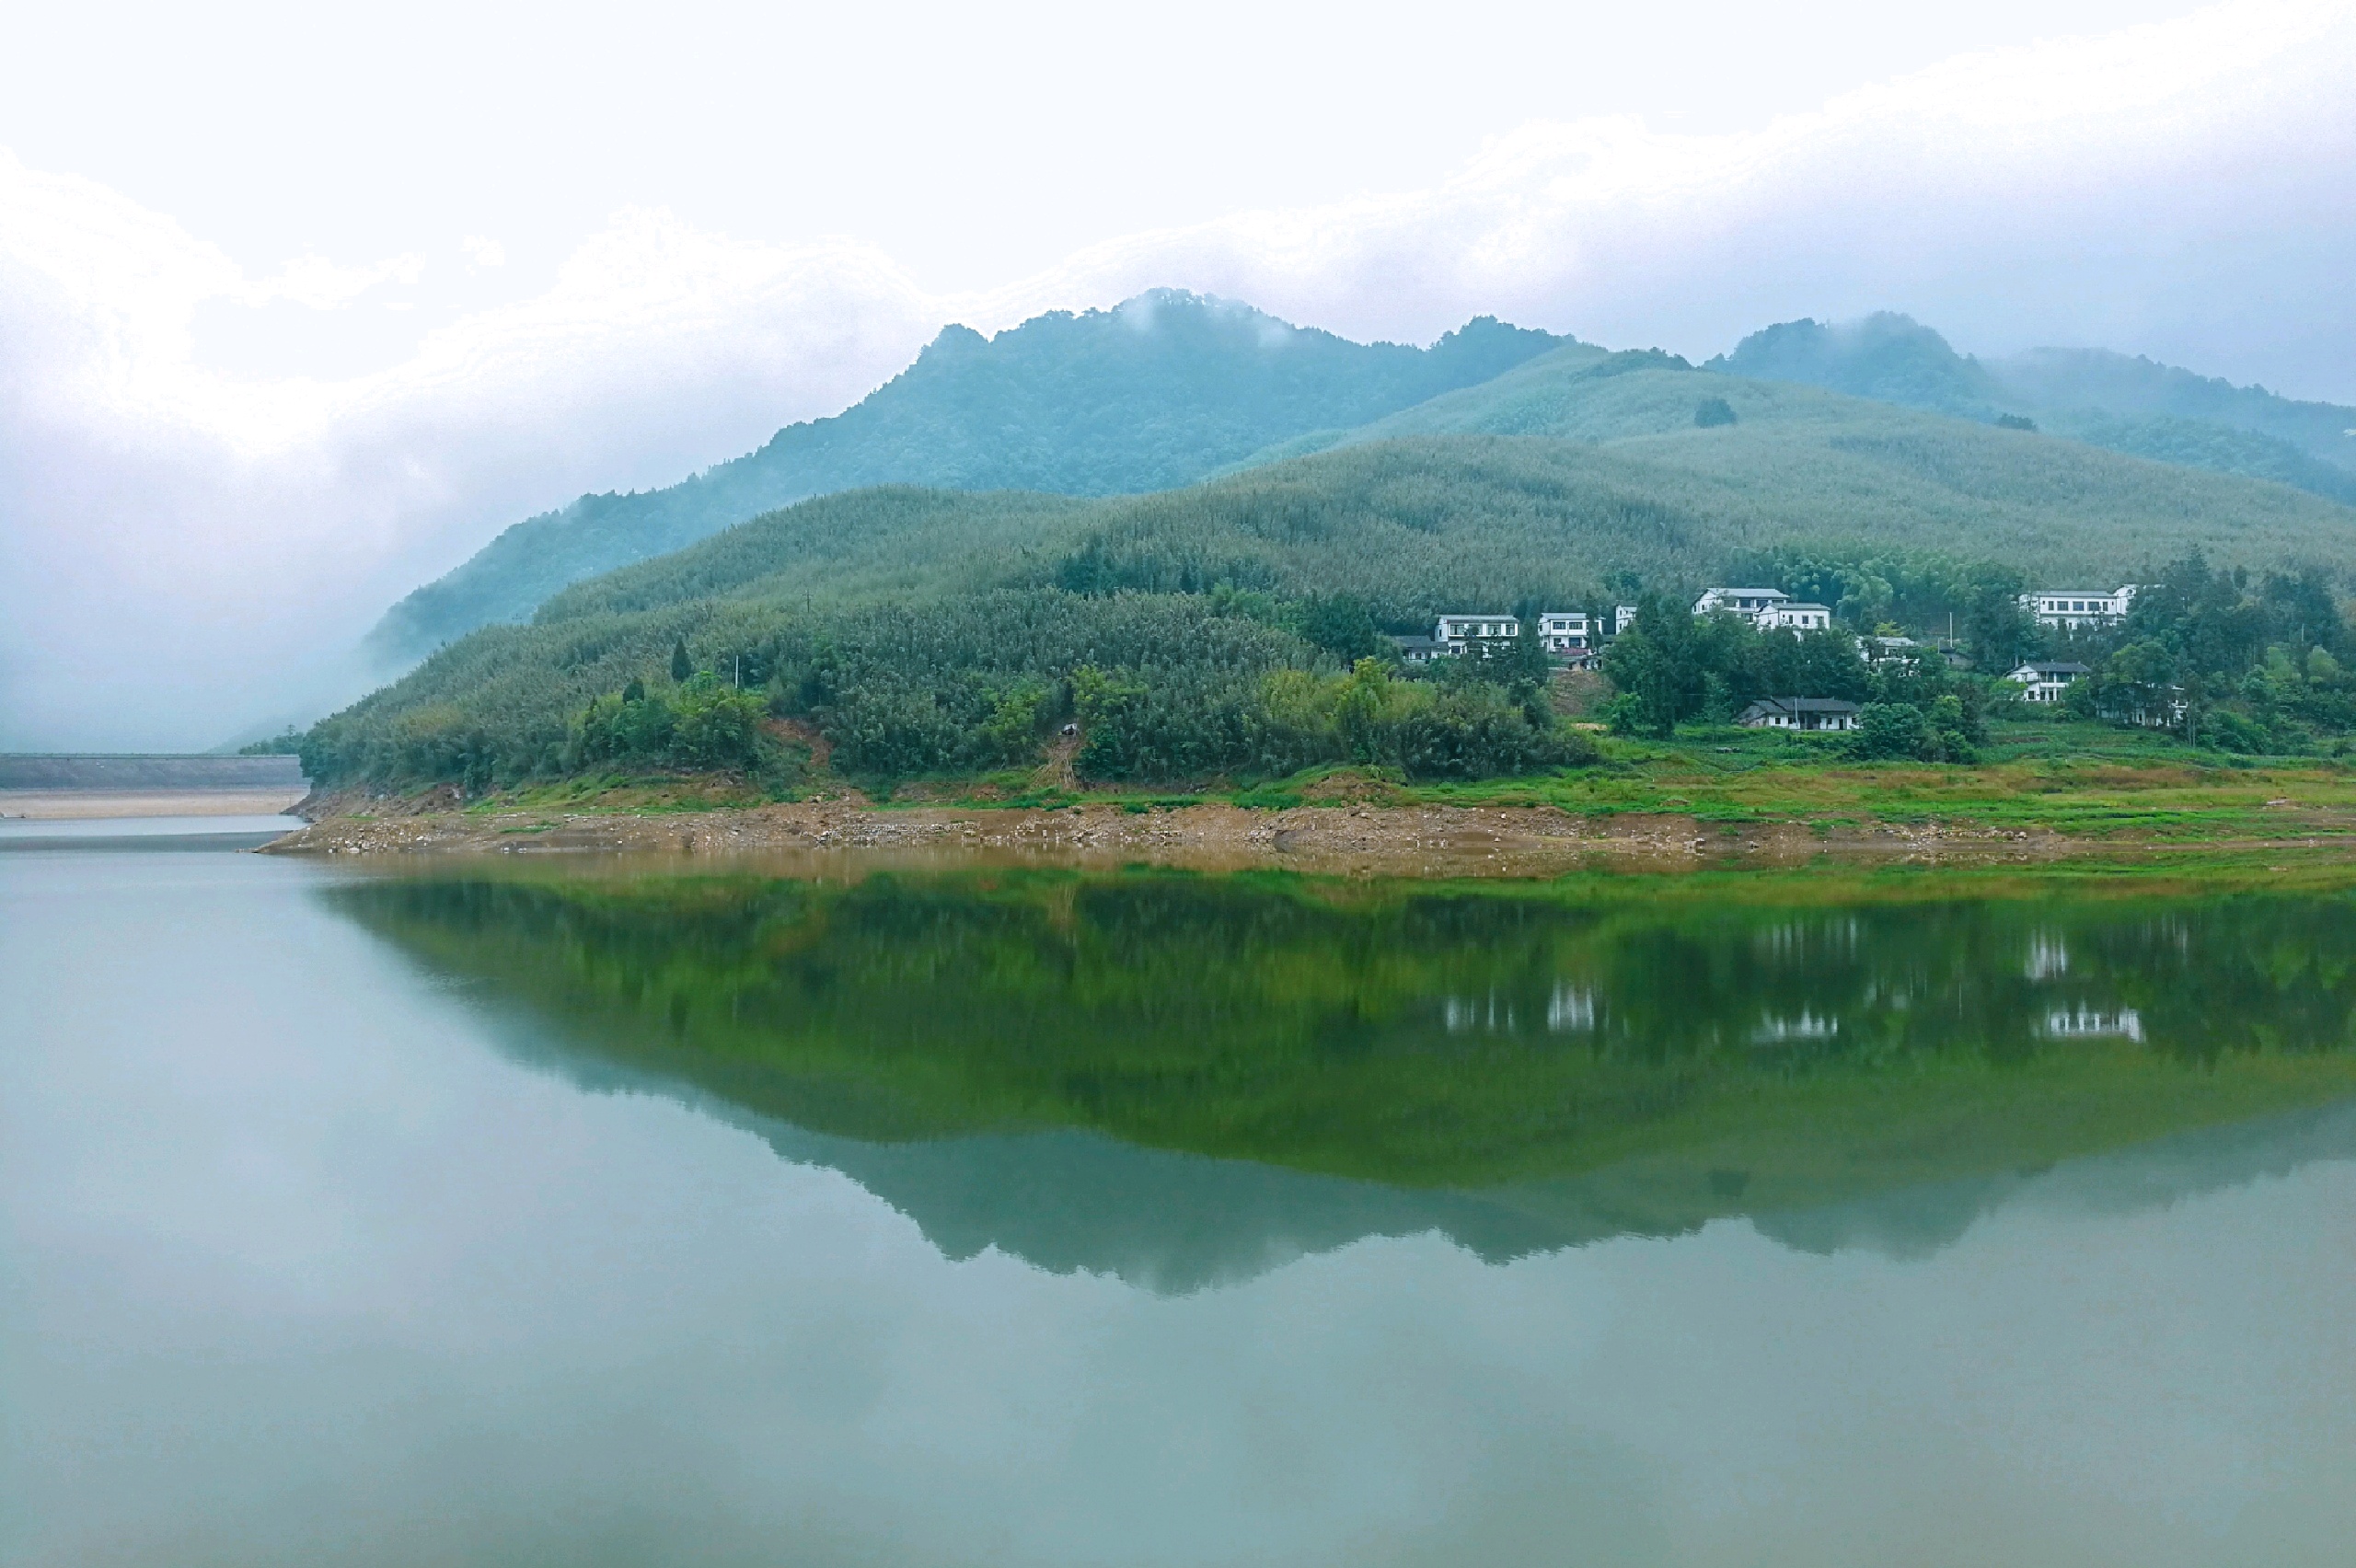 重庆周末约上好友去了梁平百里竹海景区景区总体打造感觉还不错